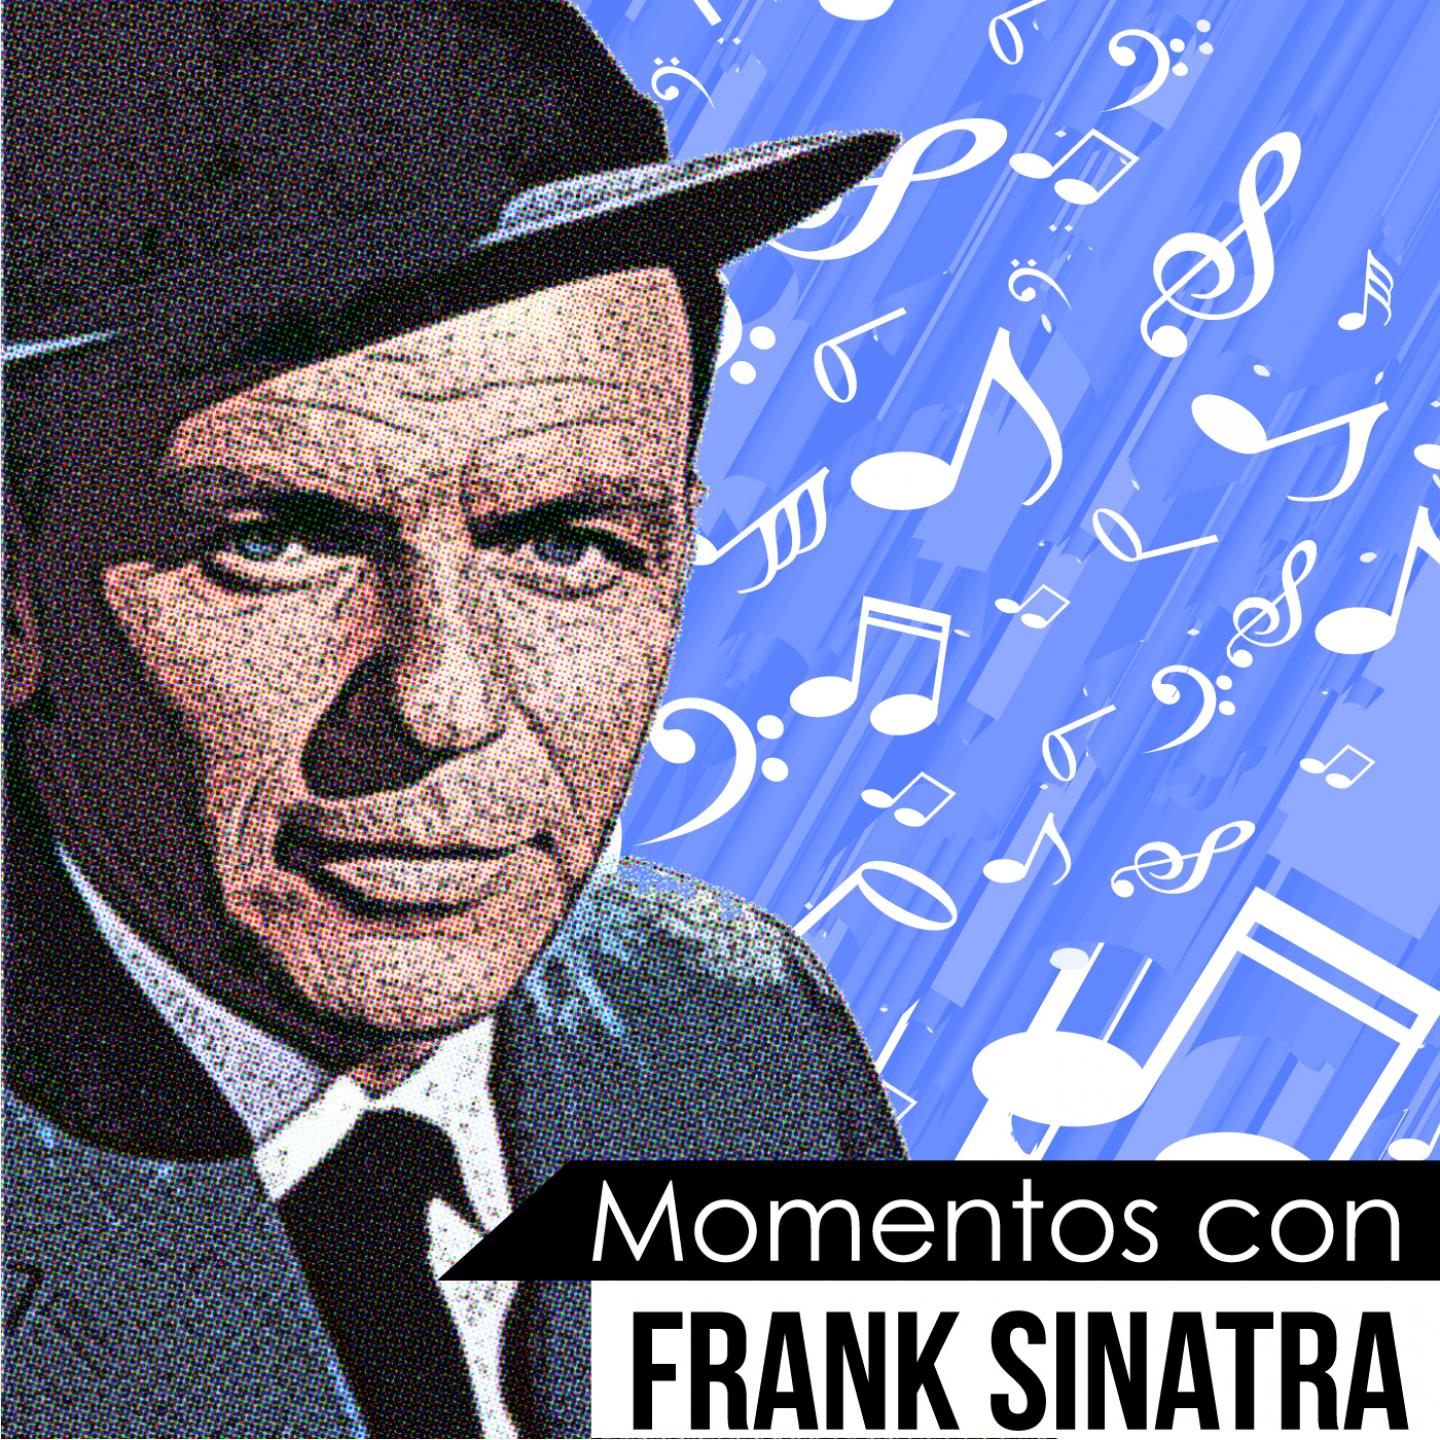 That's Life (Momentos Con Frank Sinatra)